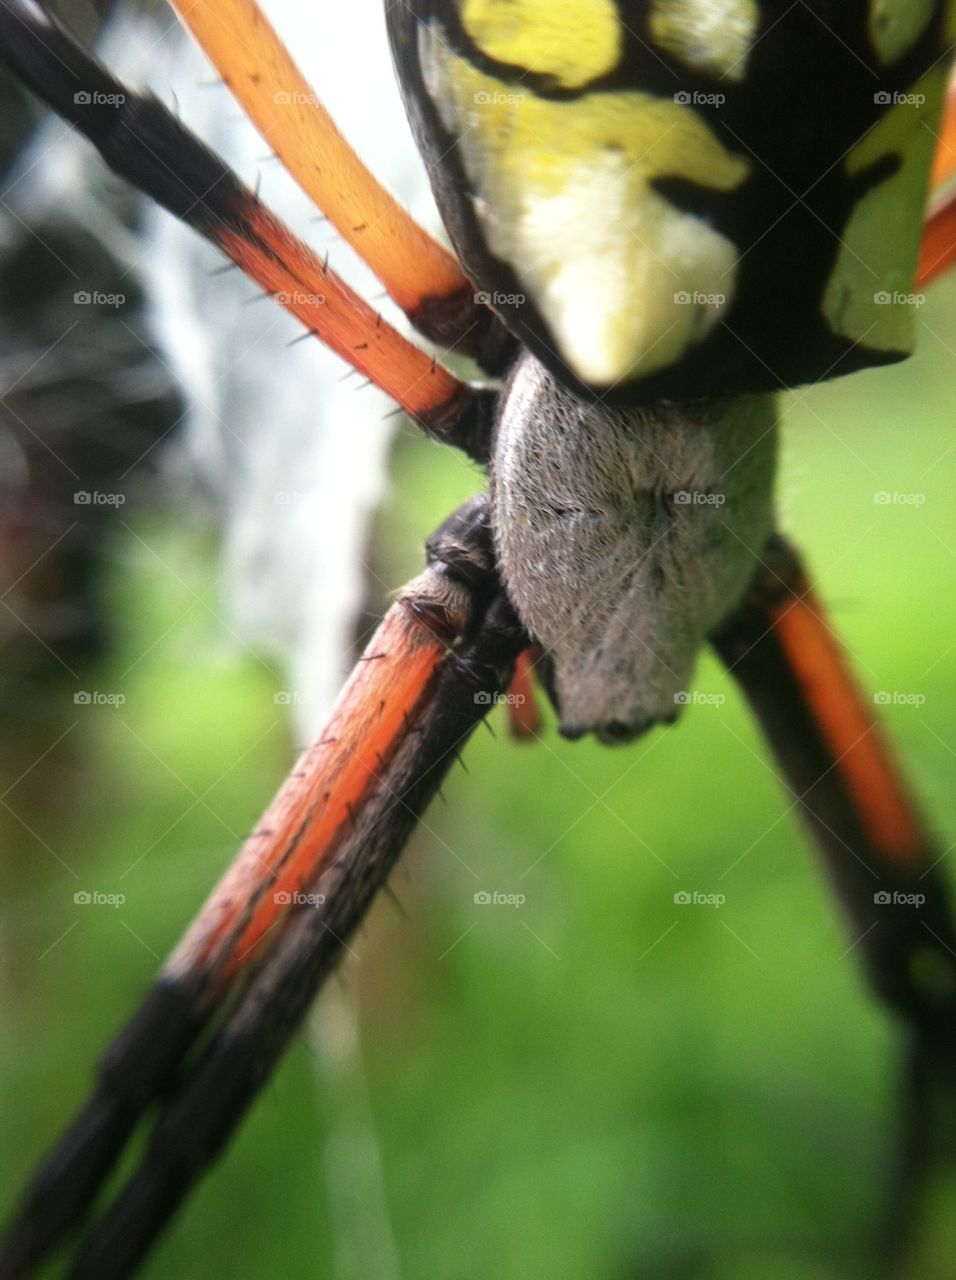 Garden Spider Up Close